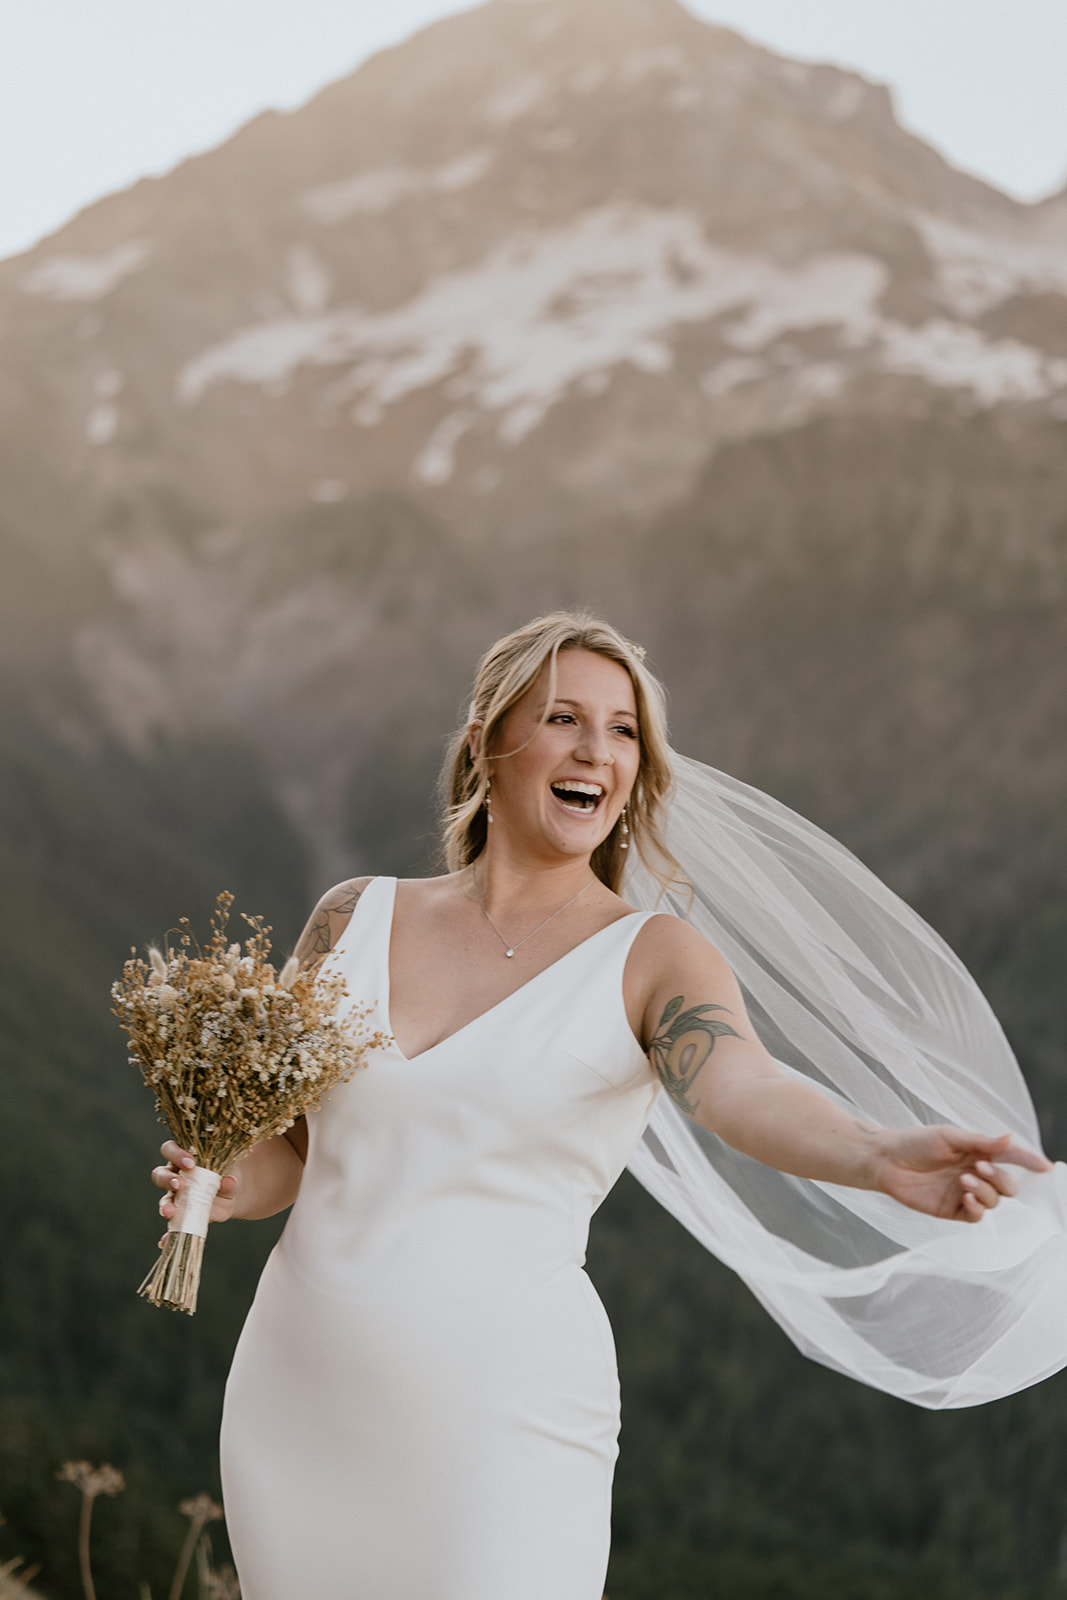 Mount Hood elopement for the adventurous bride